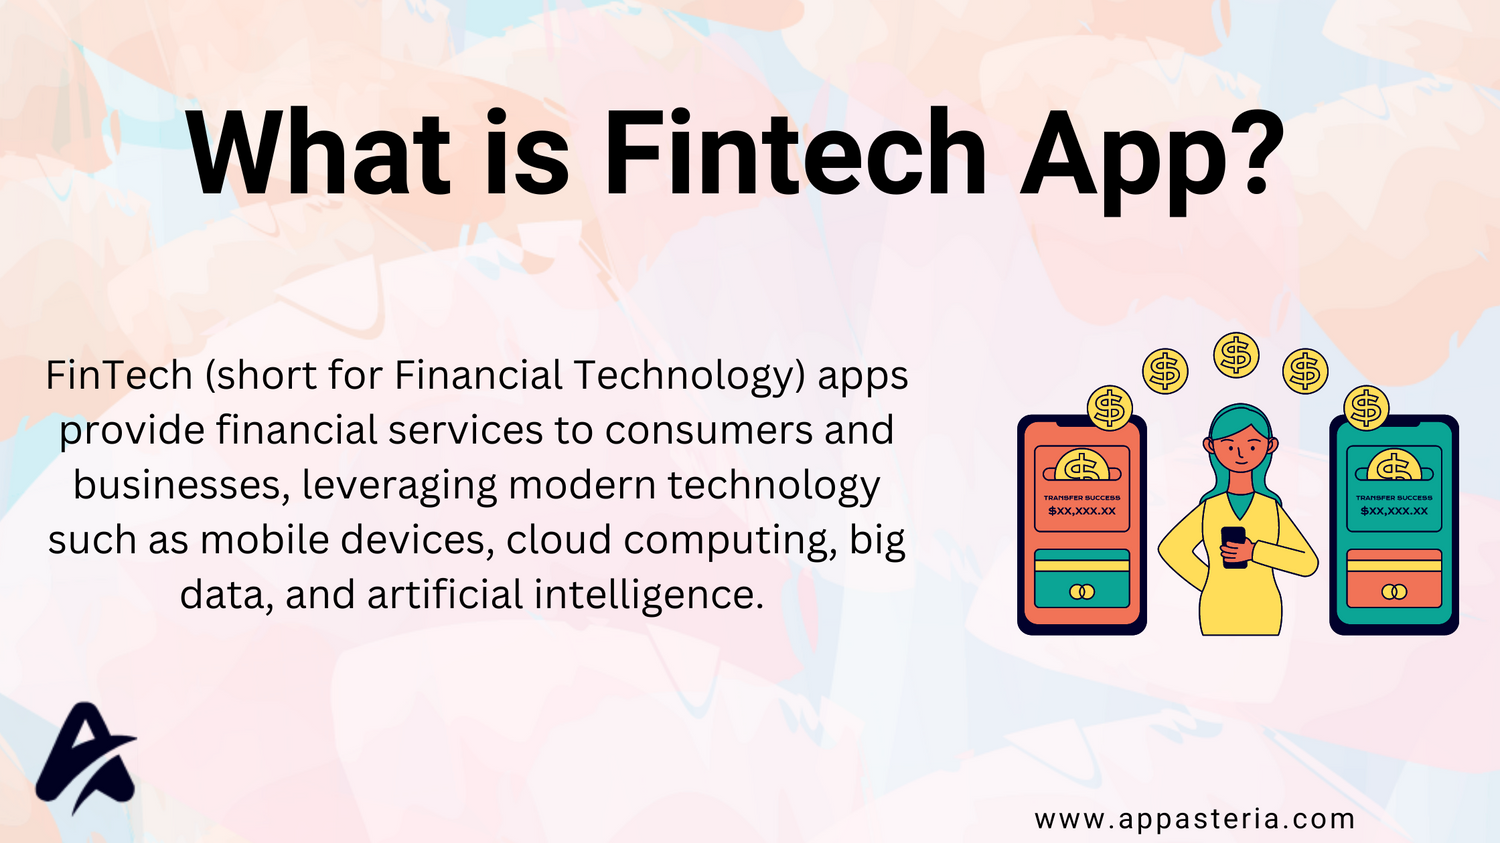 What is Fintech App?